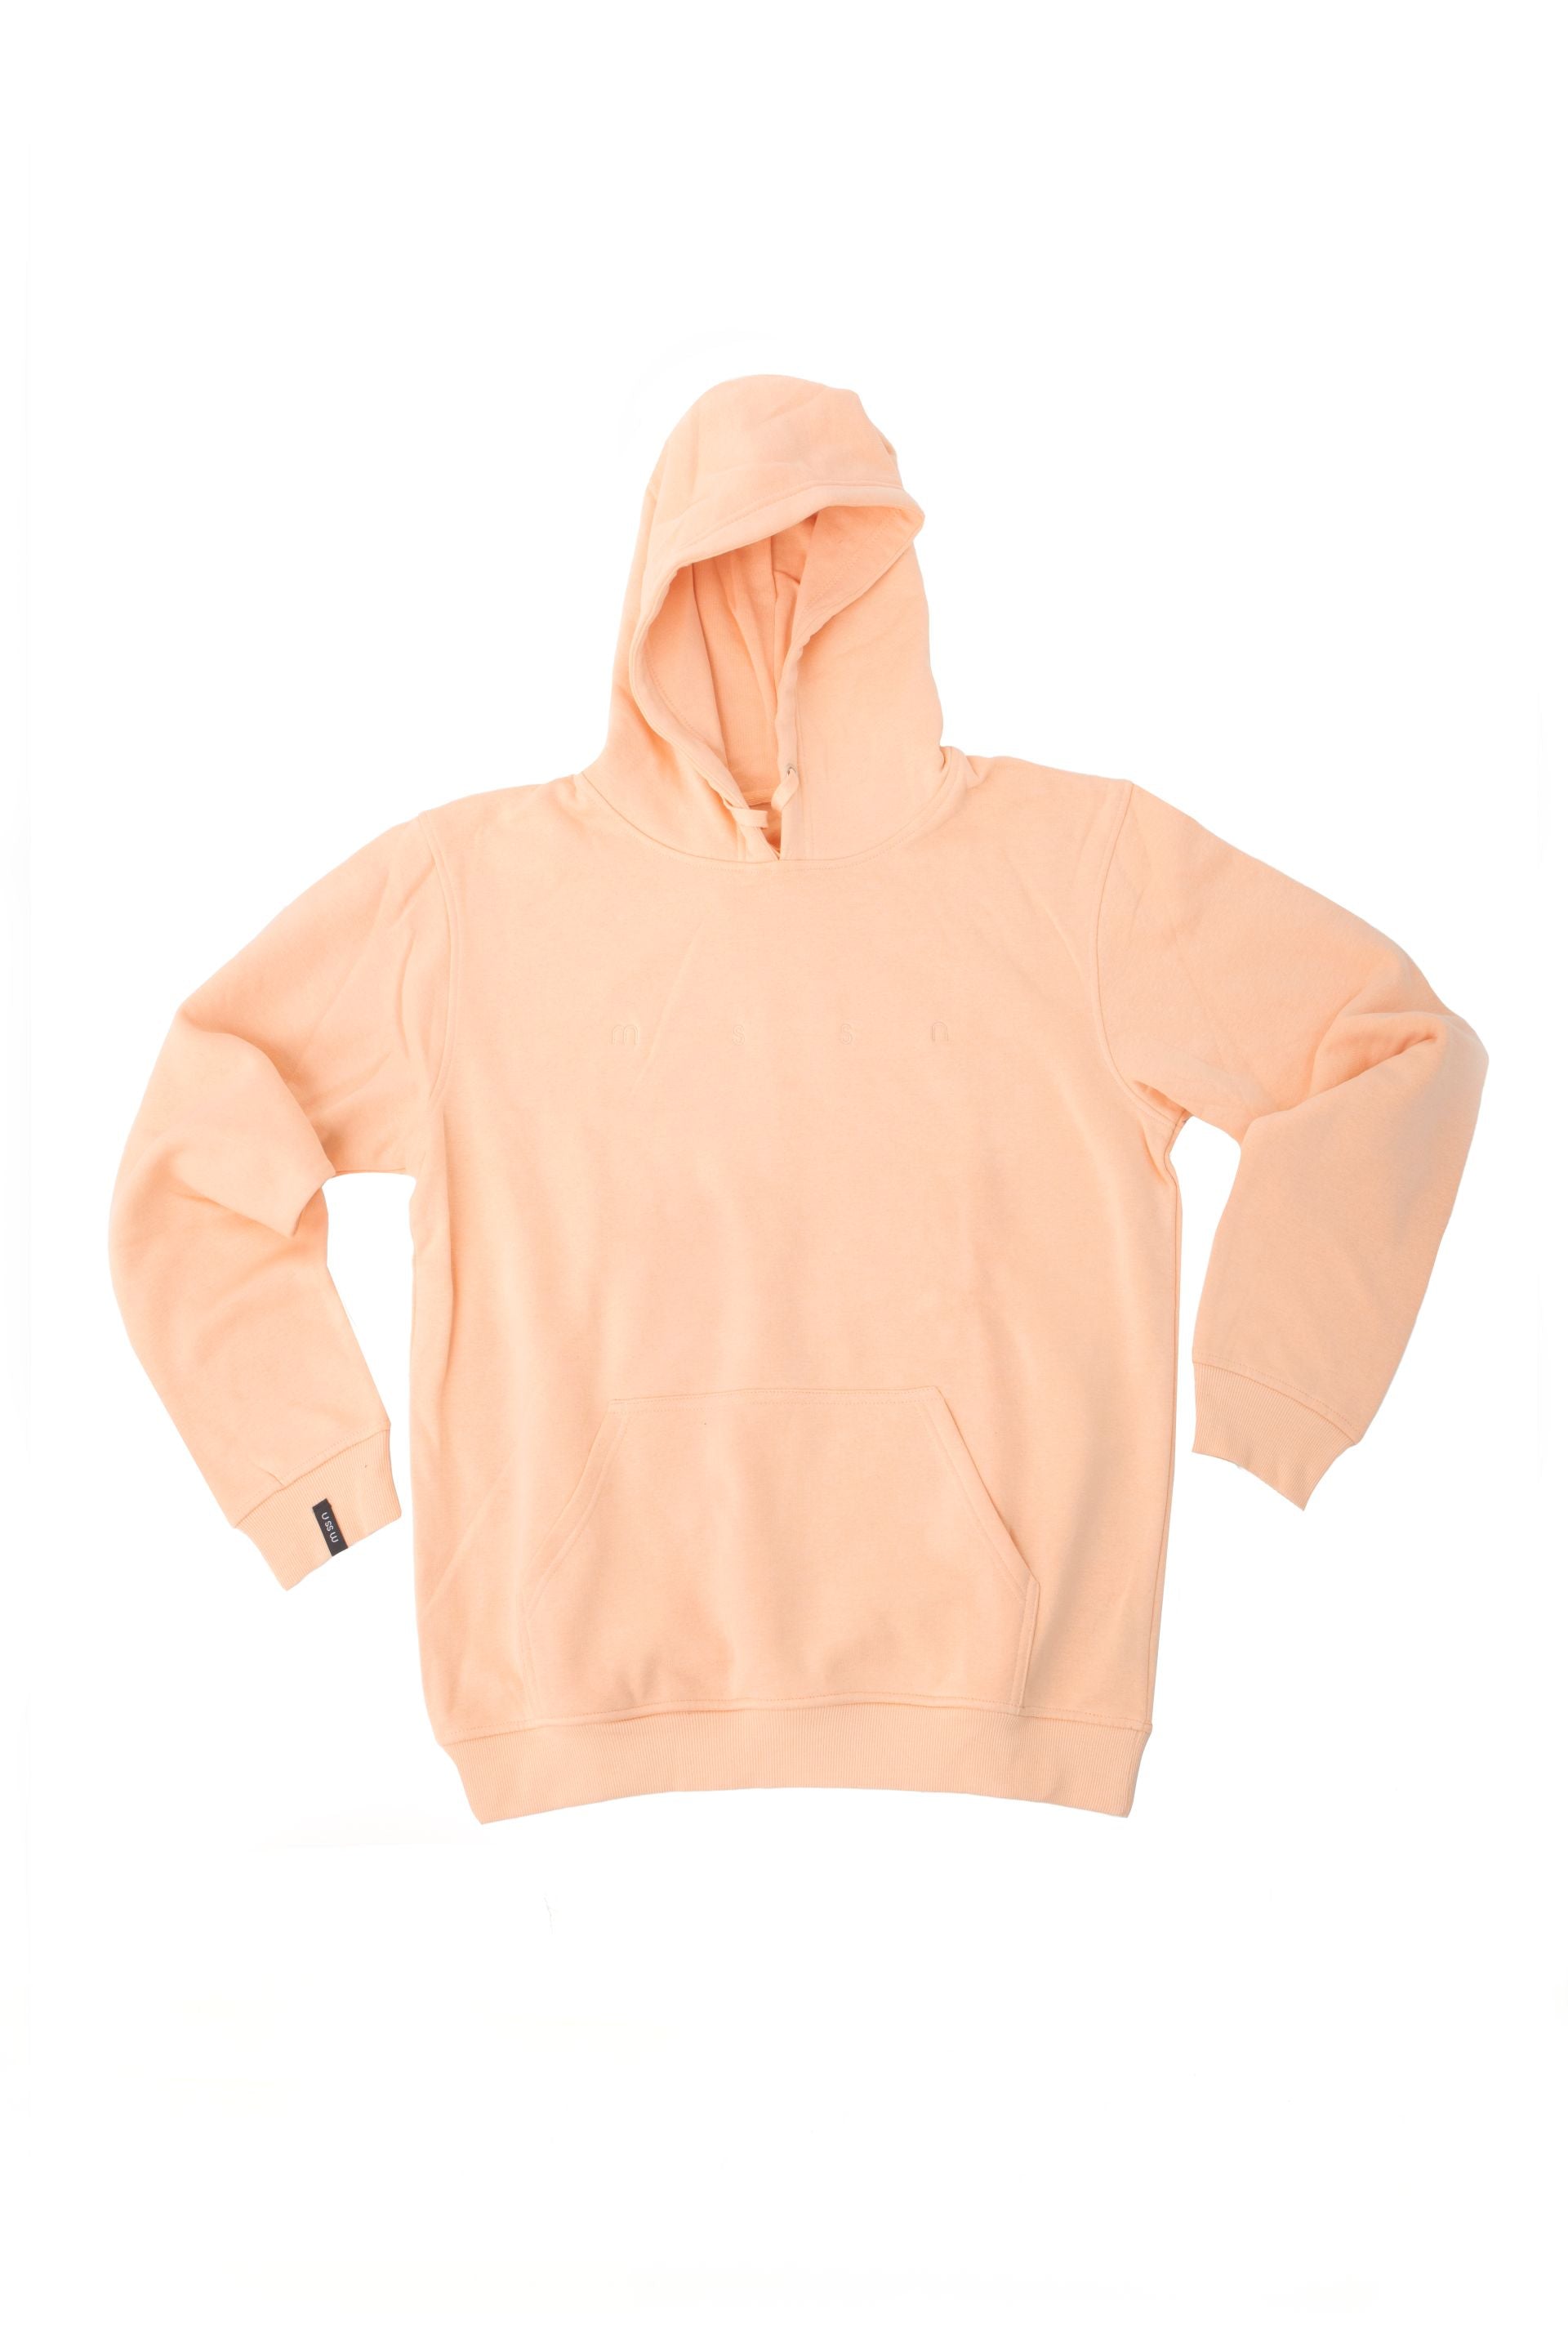 everlast limited edition premium hoodie